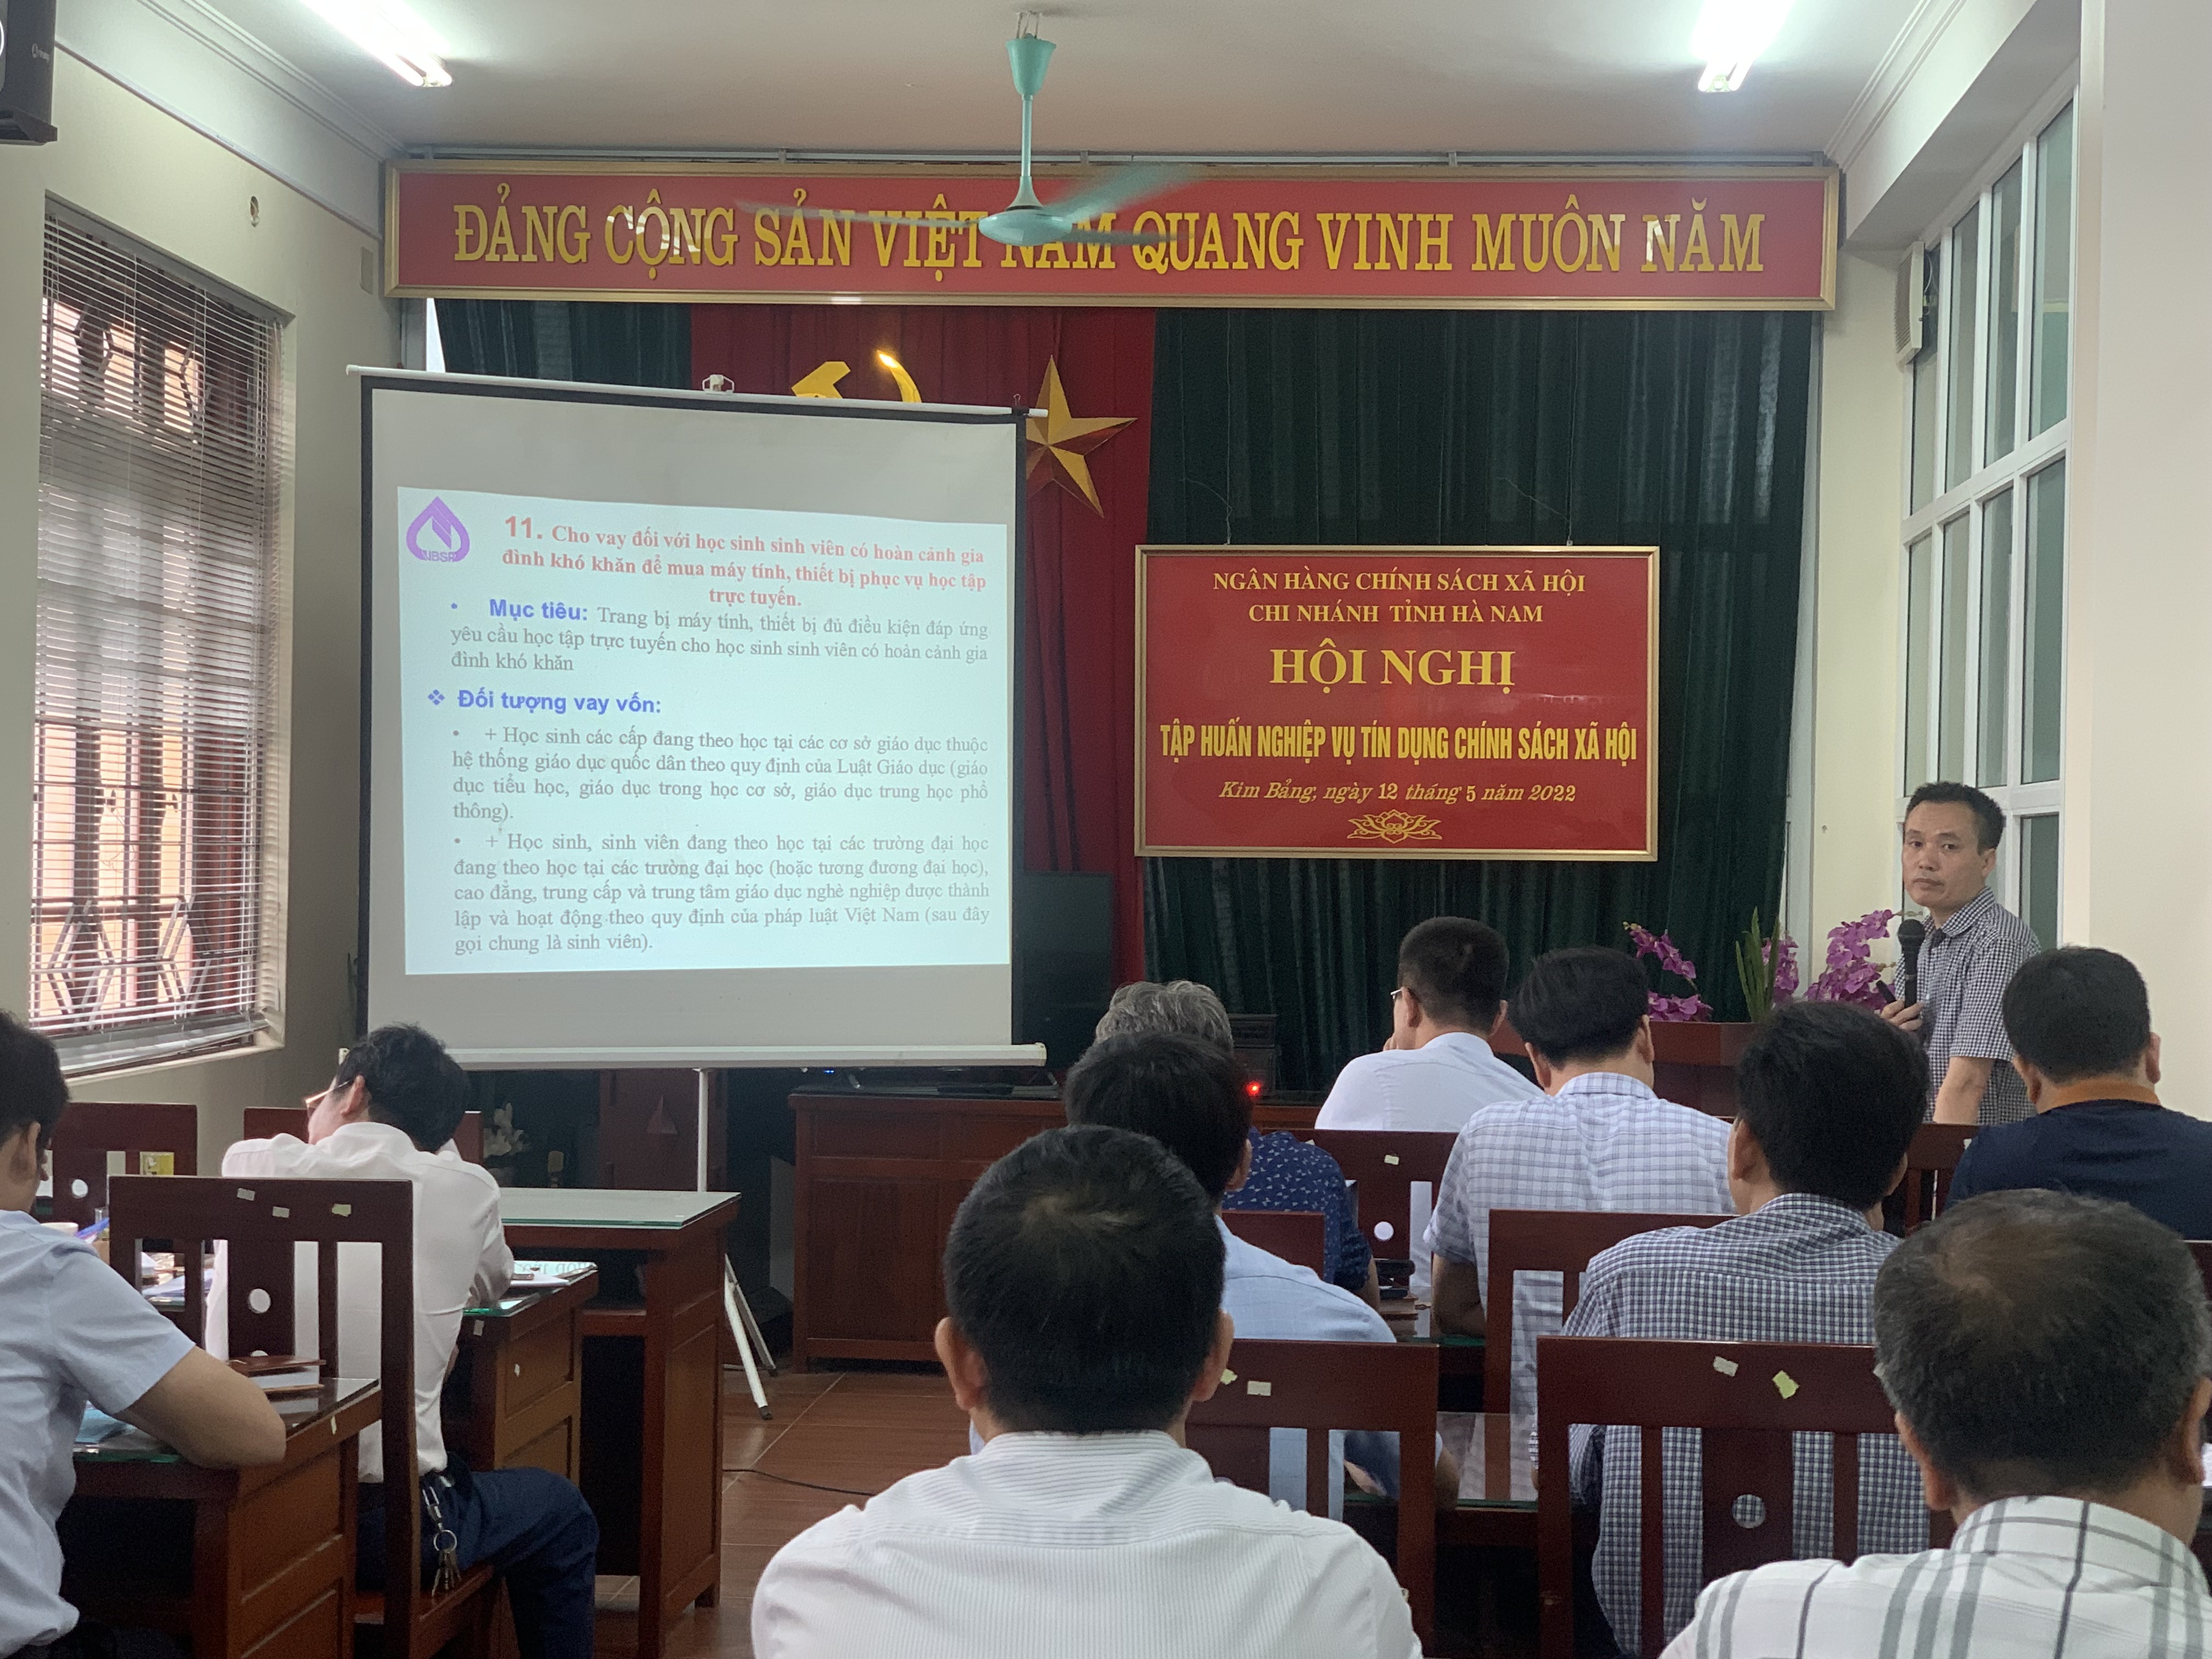 Báo cáo viên NHCSXH tỉnh Hà Nam  truyền đạt nội dung về tín dụng chính sách xã hội.jpg